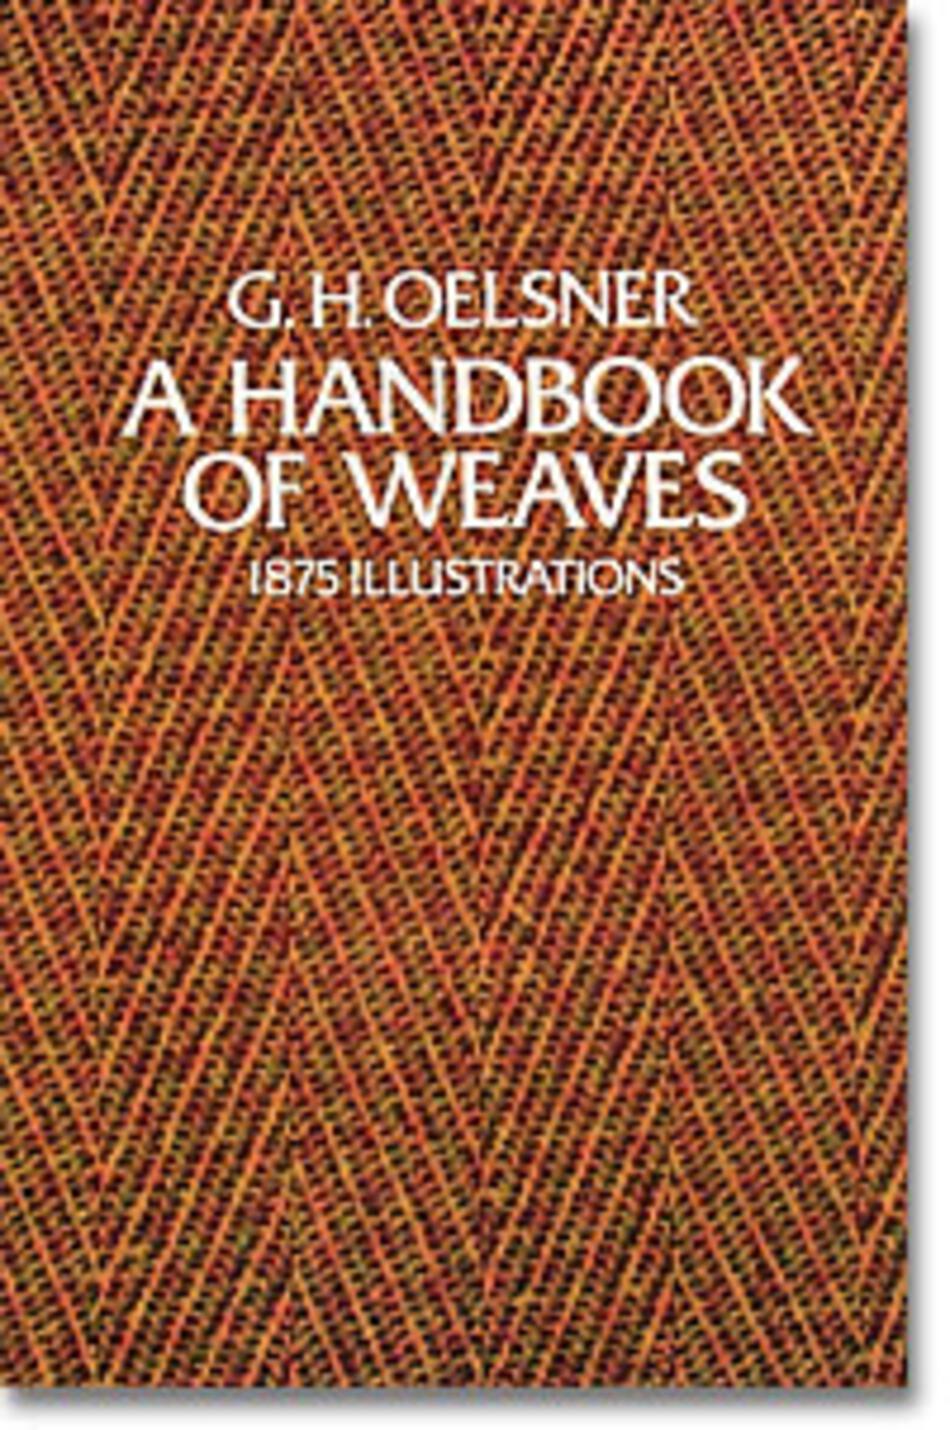 Weaving Books A Handbook of Weaves